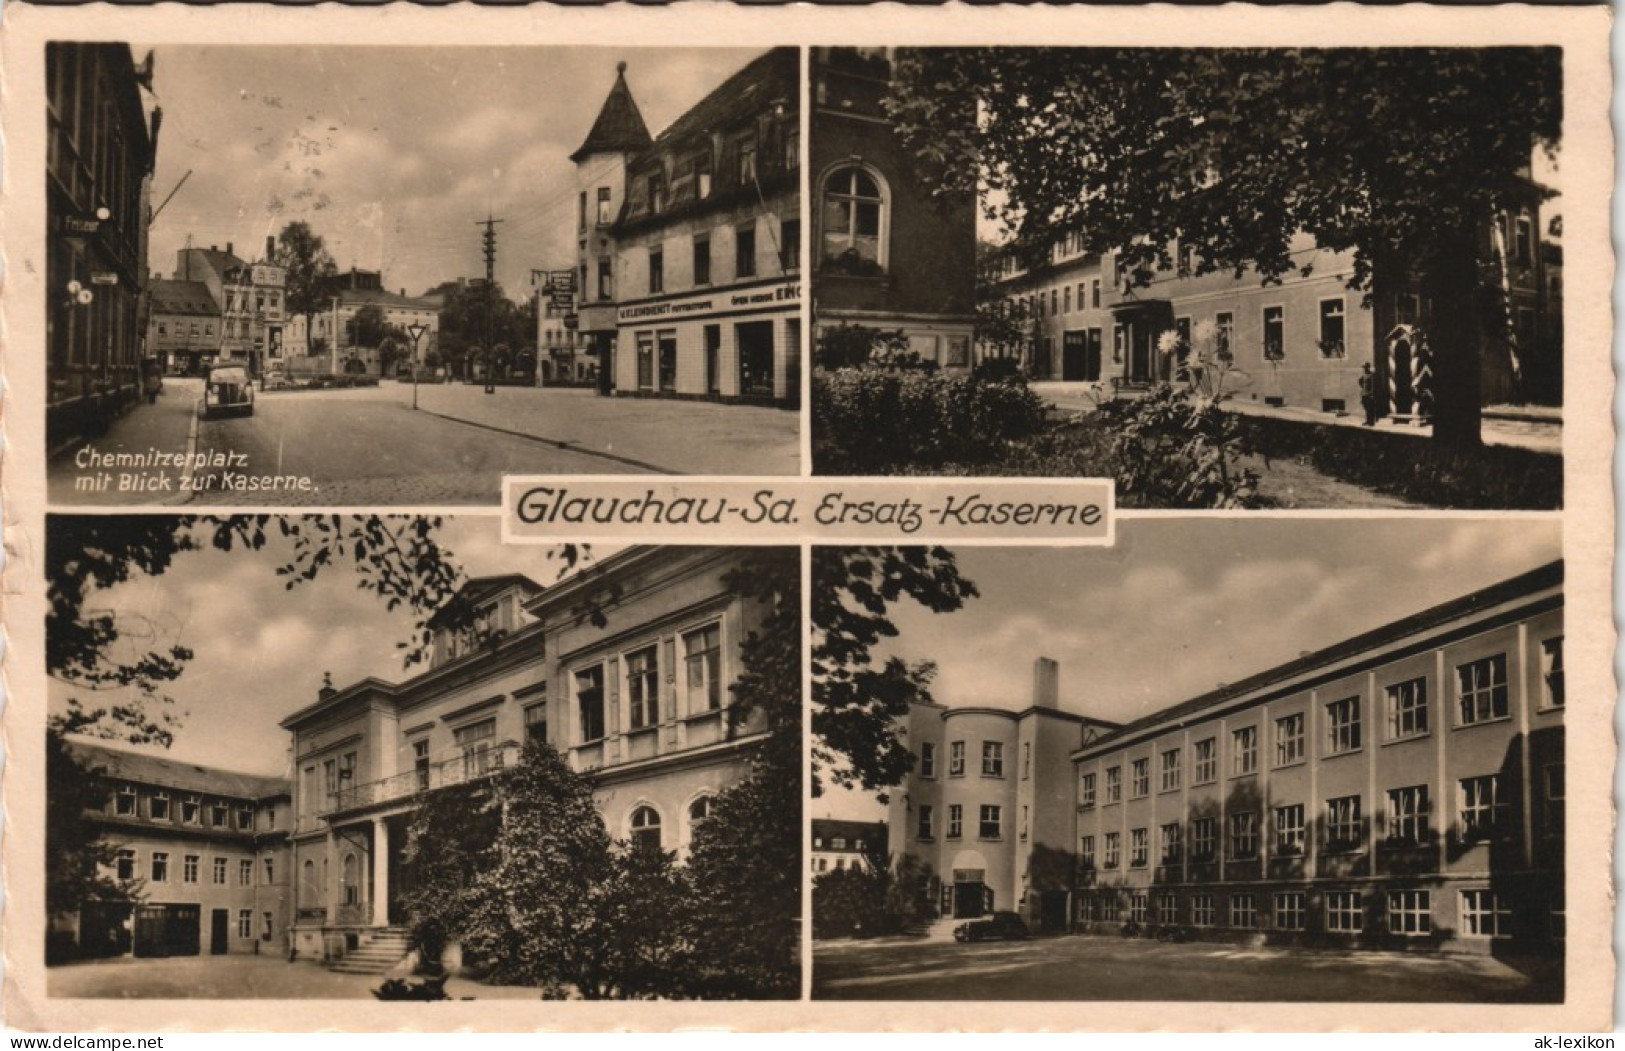 Ansichtskarte Glauchau Ersatz-Kaserne, Chemnitzerplatz 1940 - Glauchau